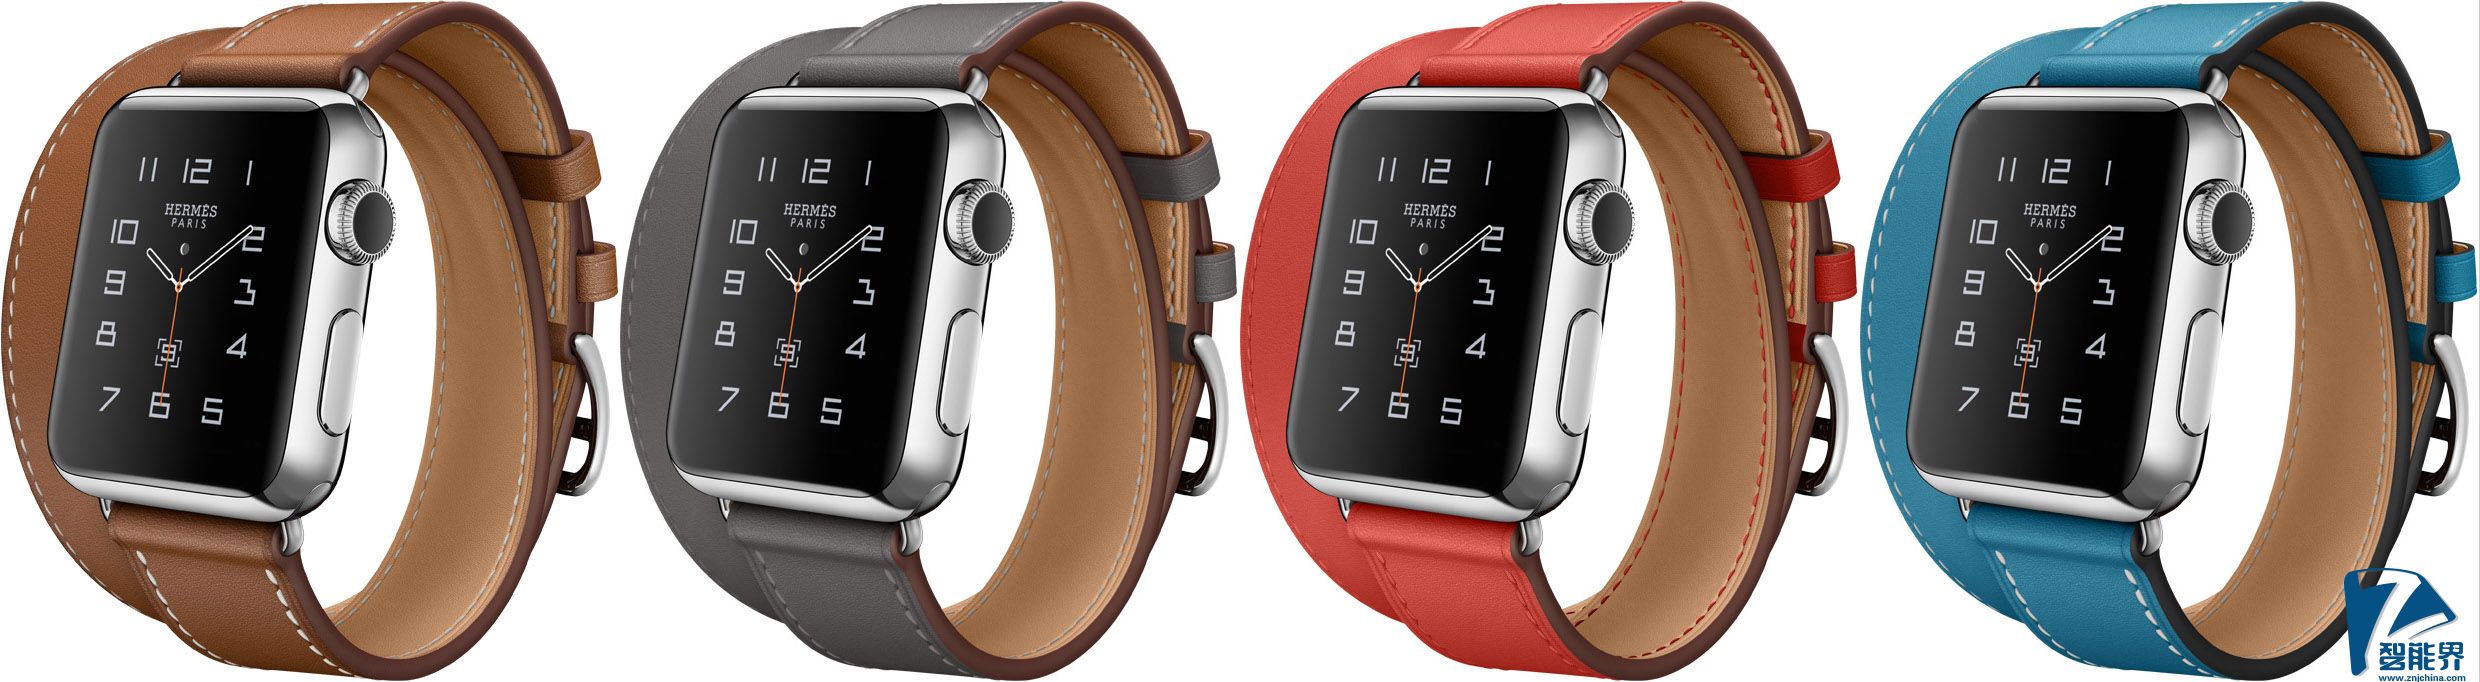 Apple-Watch-Hermes-11.jpg